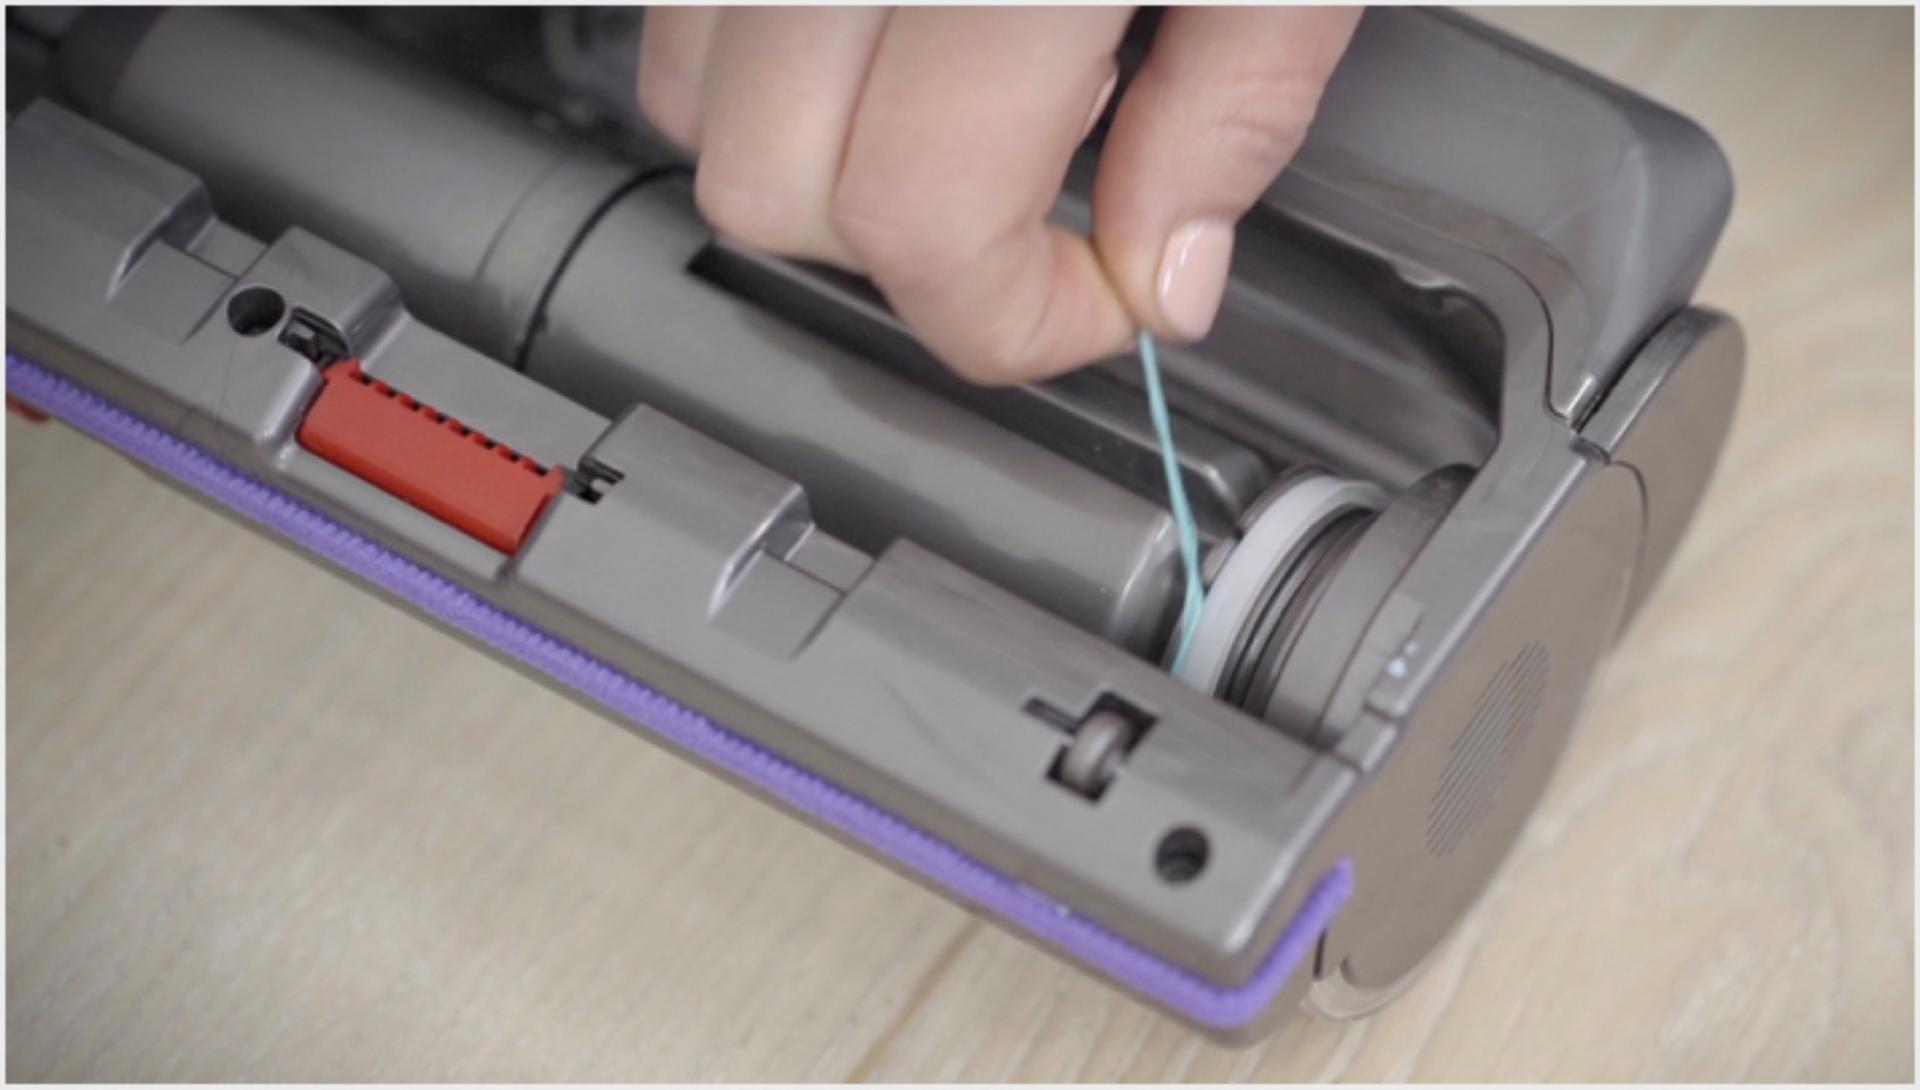  Imagen del video sobre cómo desenredar la barra de cepillo